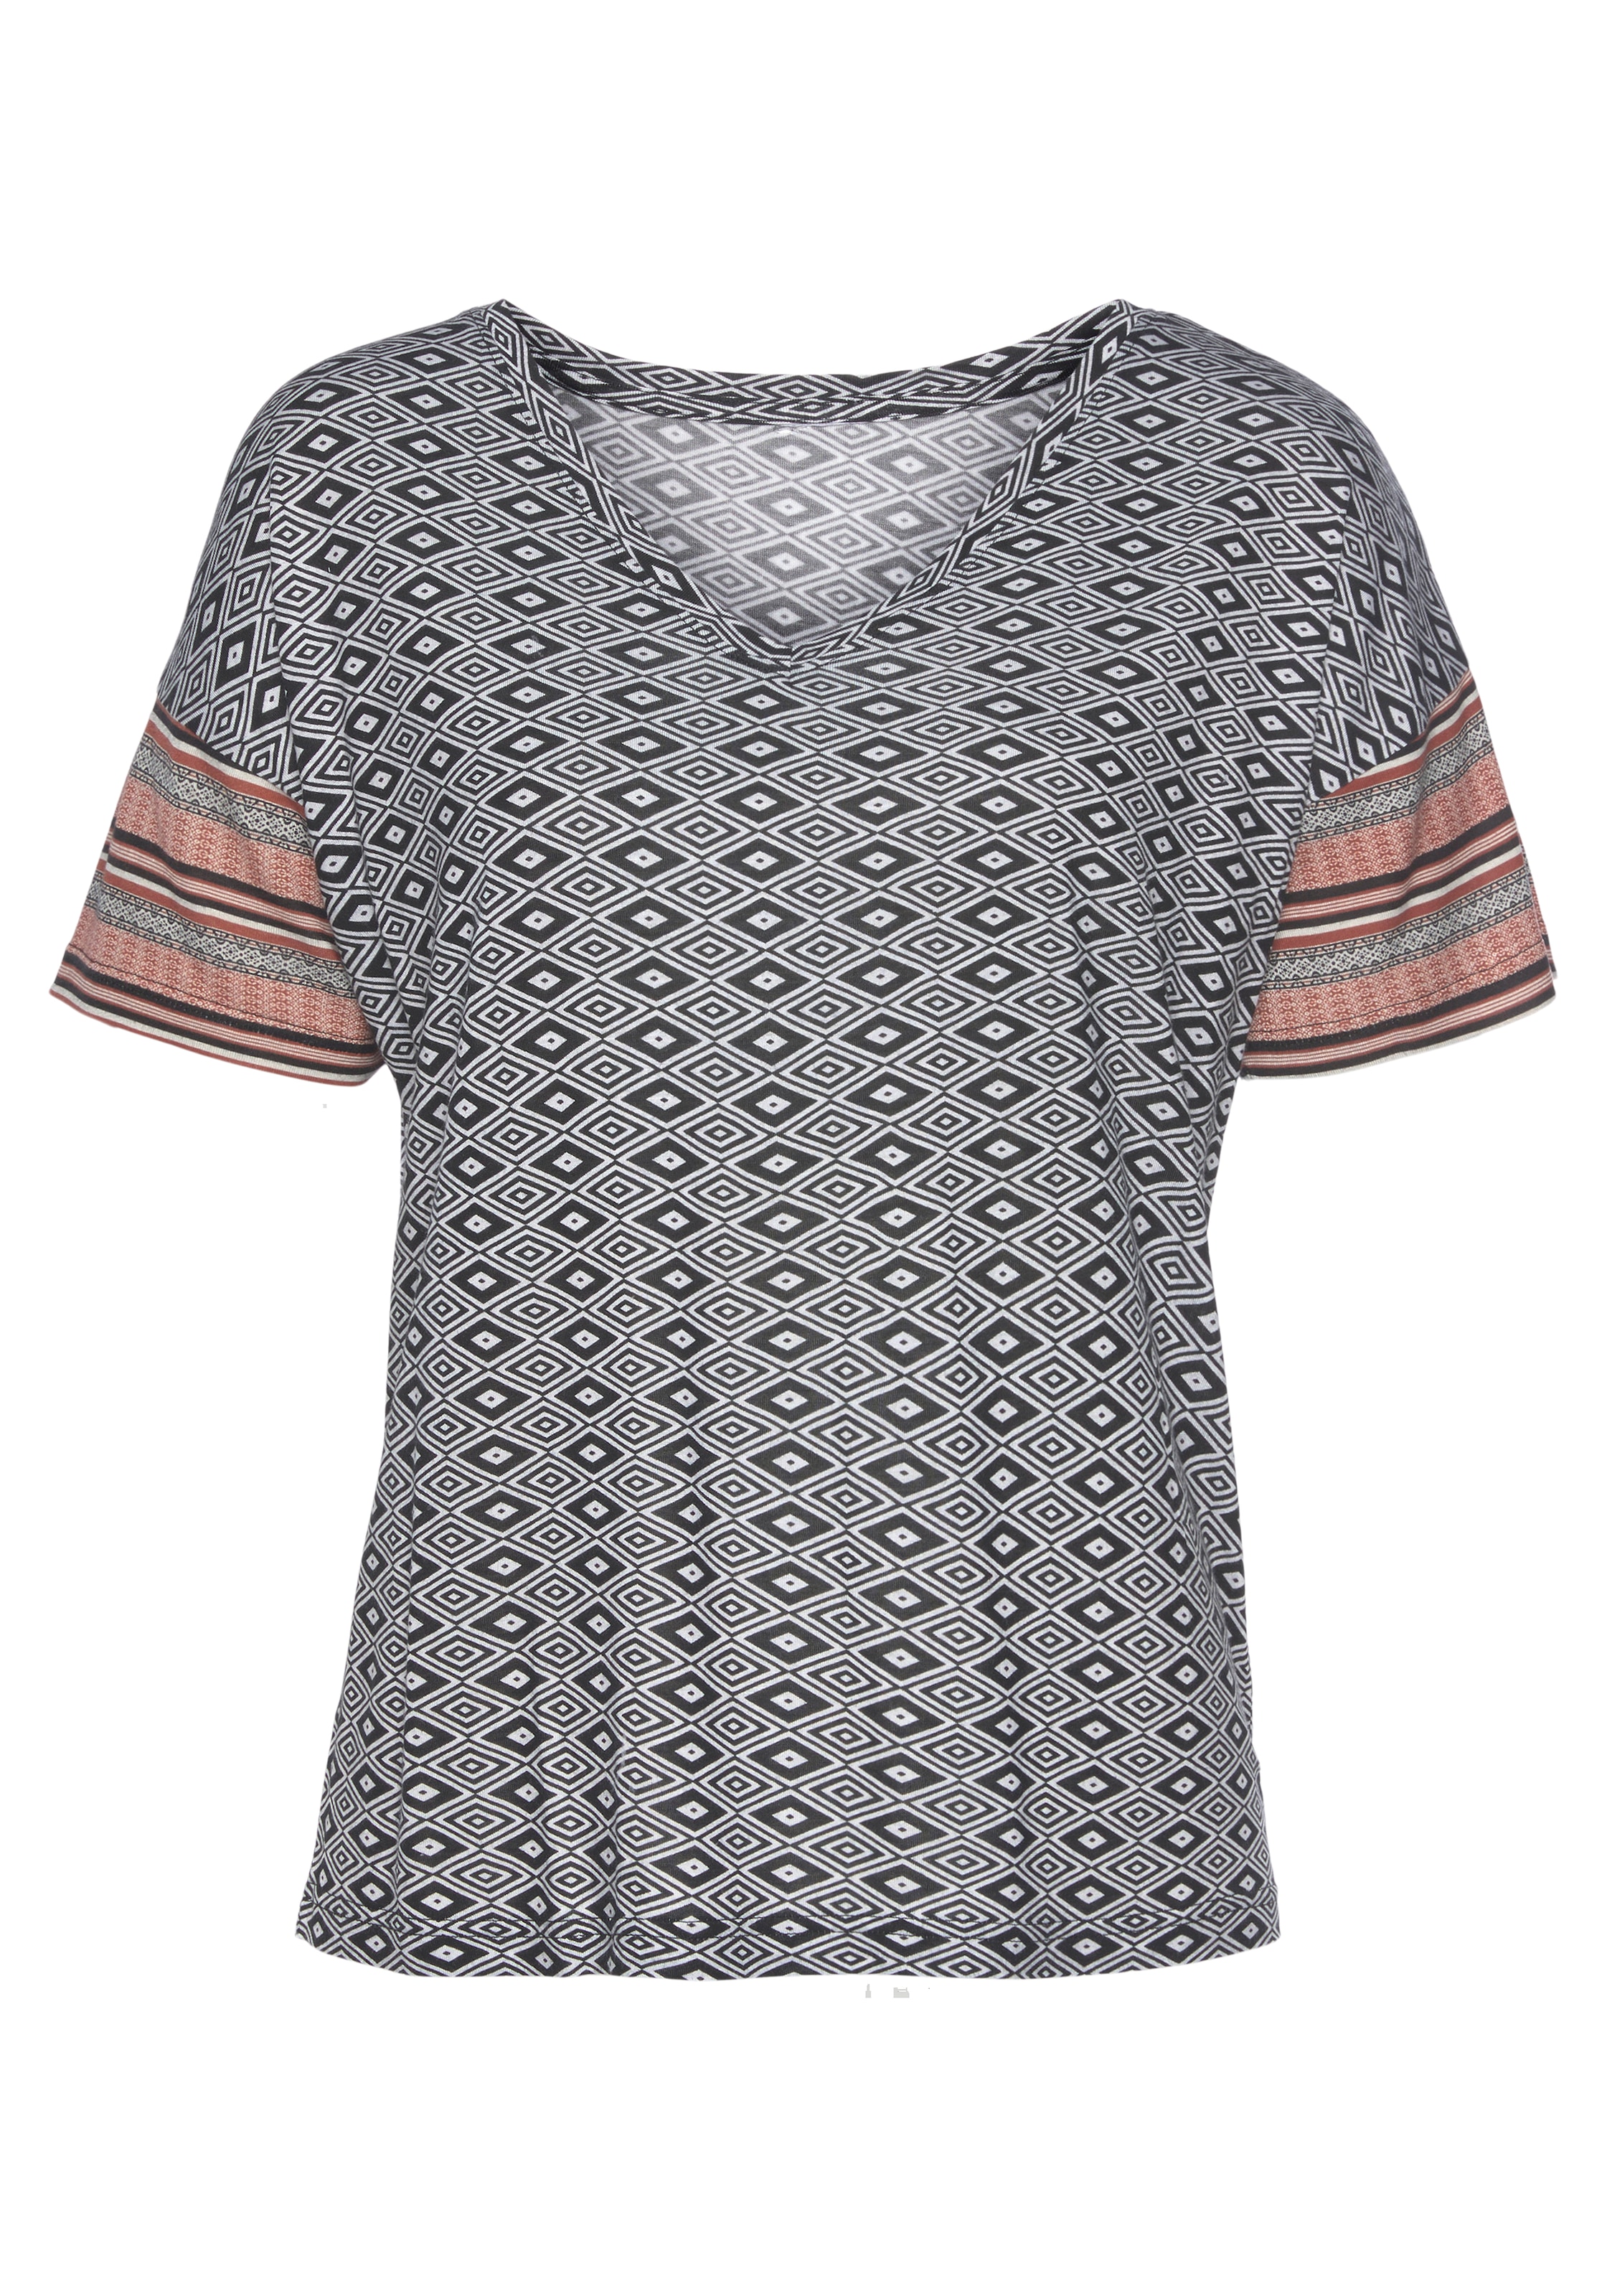 Vivance Dreams T-Shirt, in schönem Ethno-Design kaufen im OTTO Online Shop